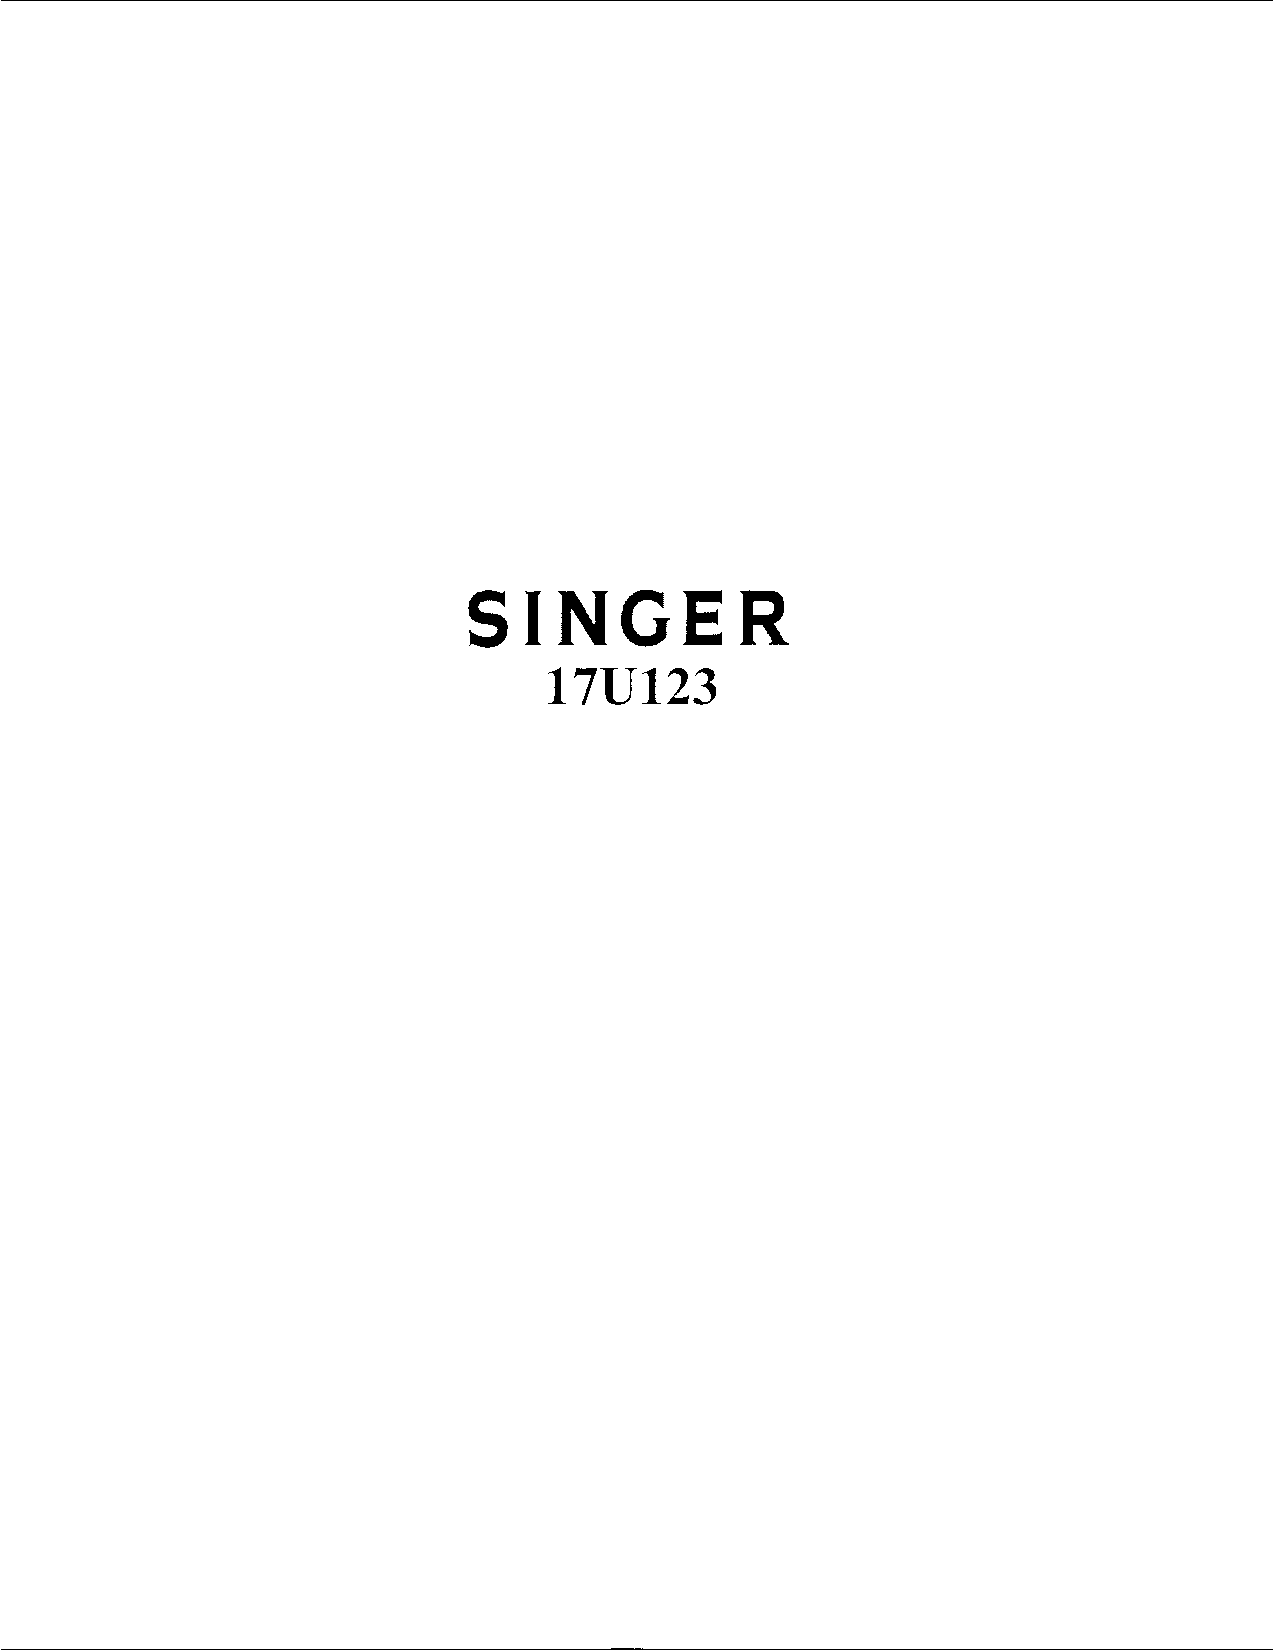 Singer 17U123 User Manual